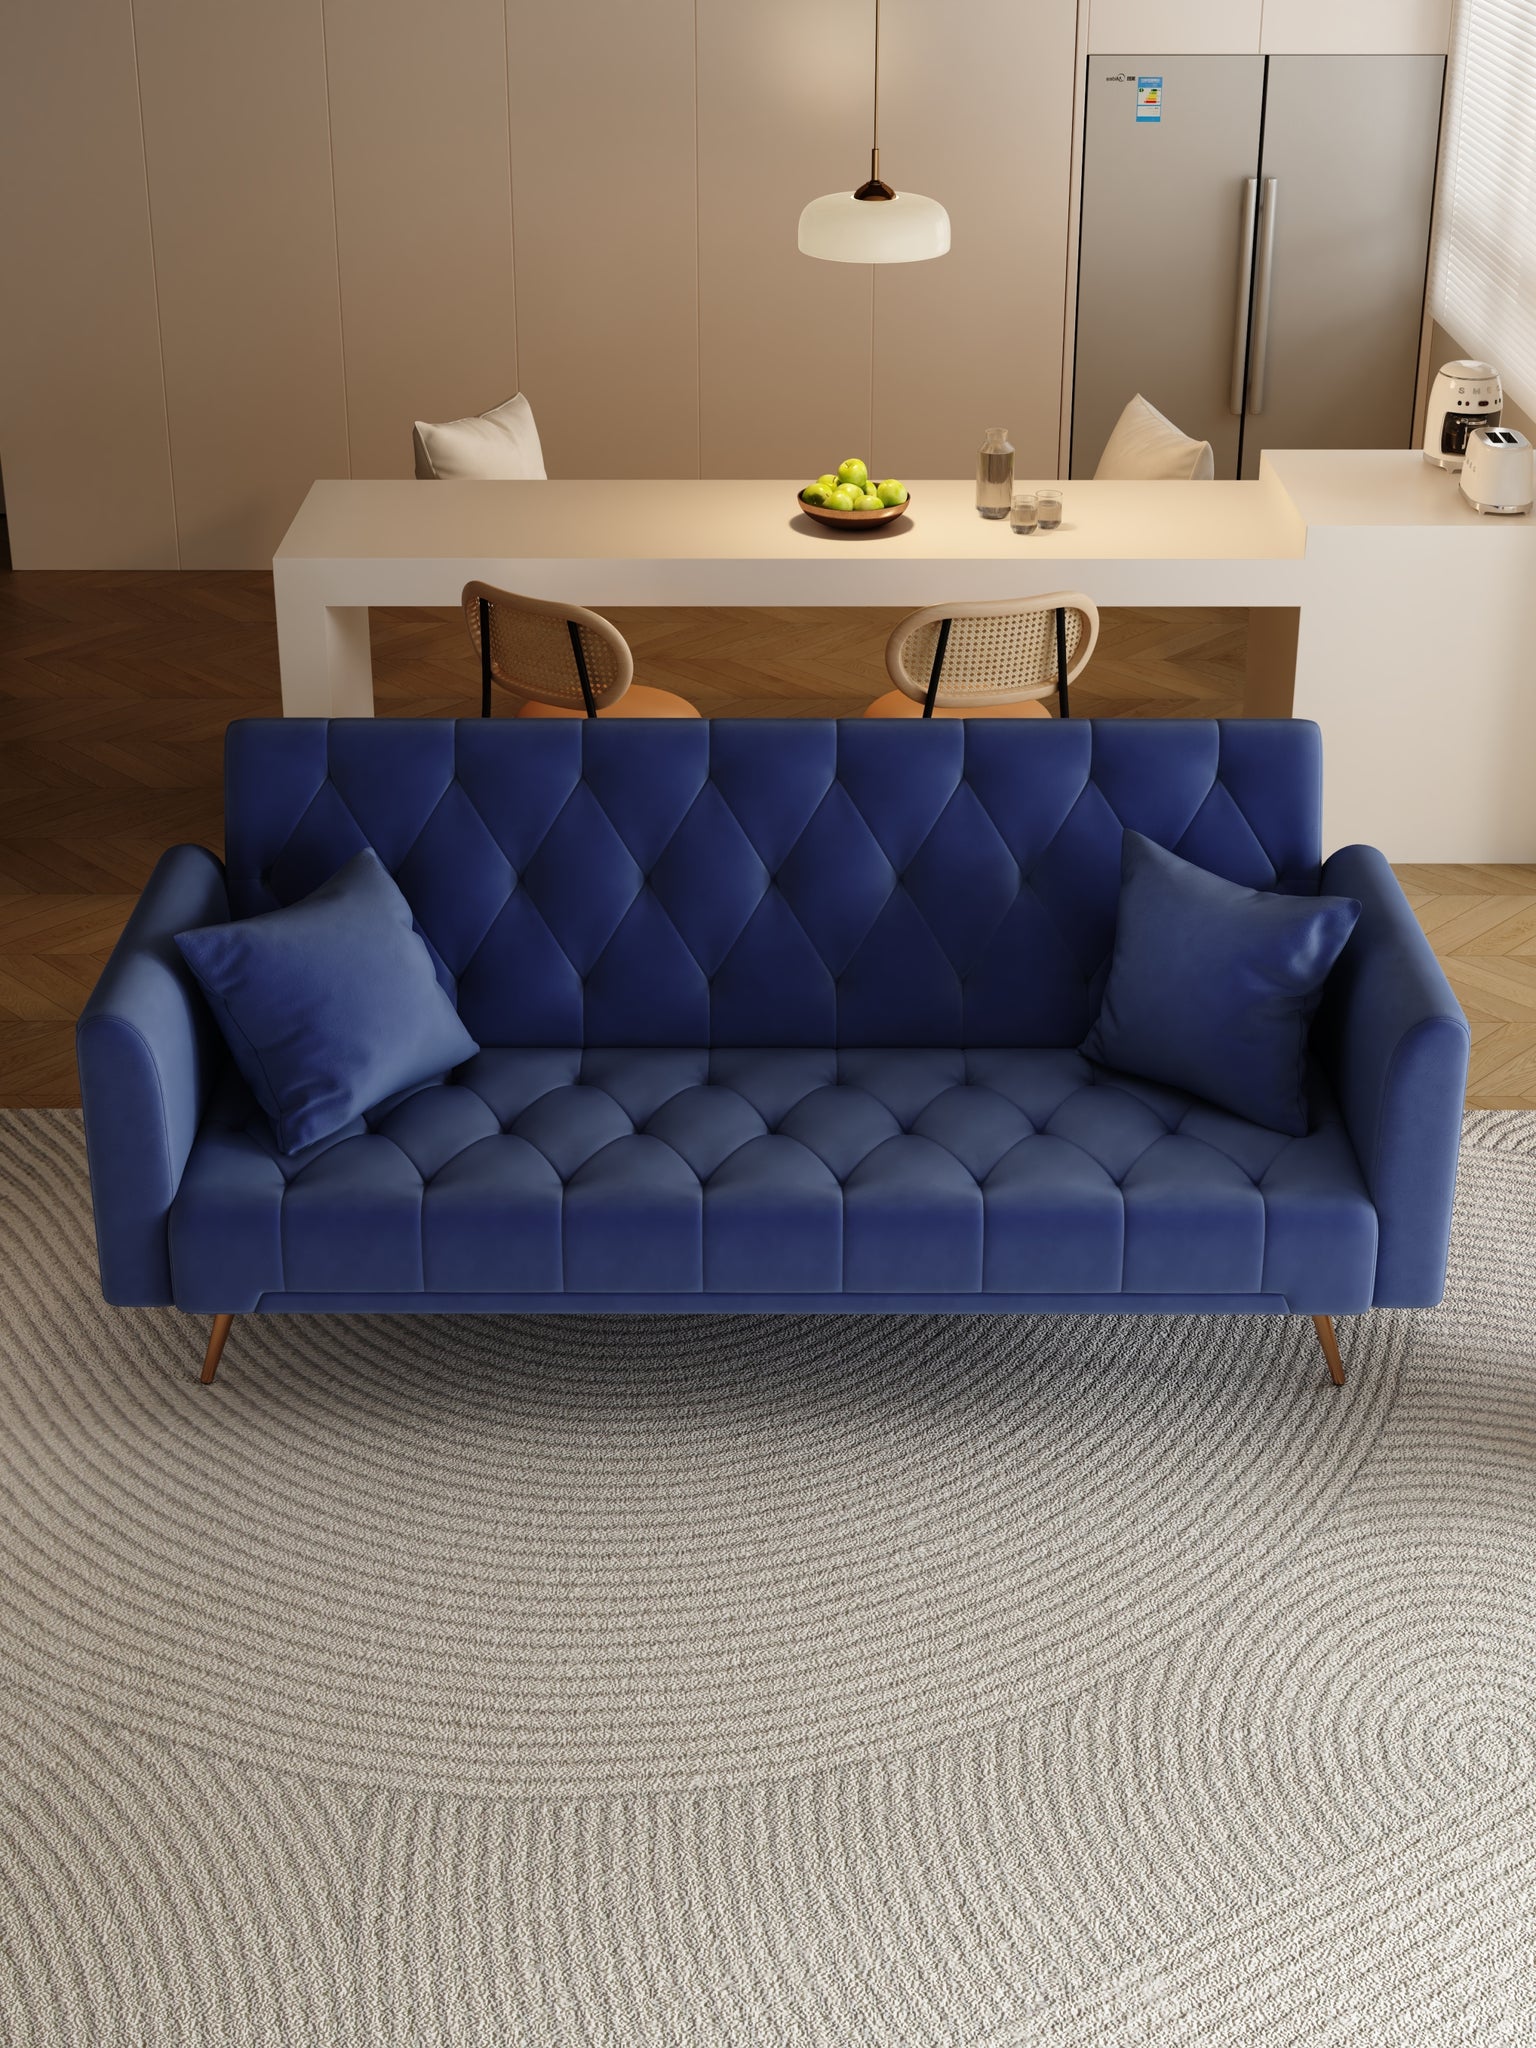 71" Convertible Double Folding Living Room Sofa Bed blue-velvet